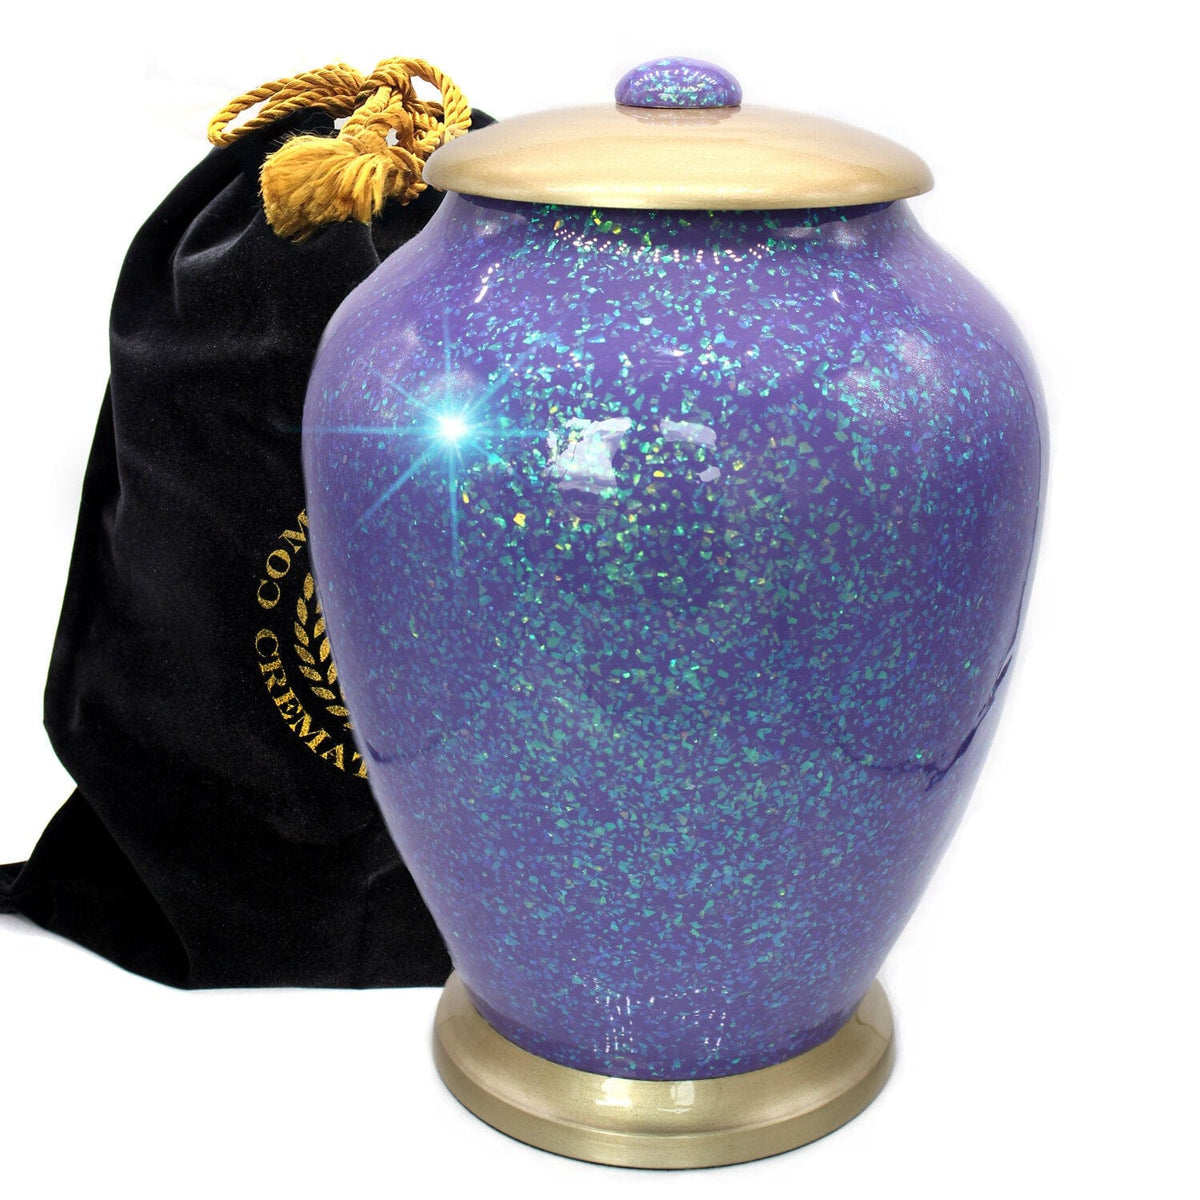 Commemorative Cremation Urns Large Cosmic Shimmering Light Cremation Urn